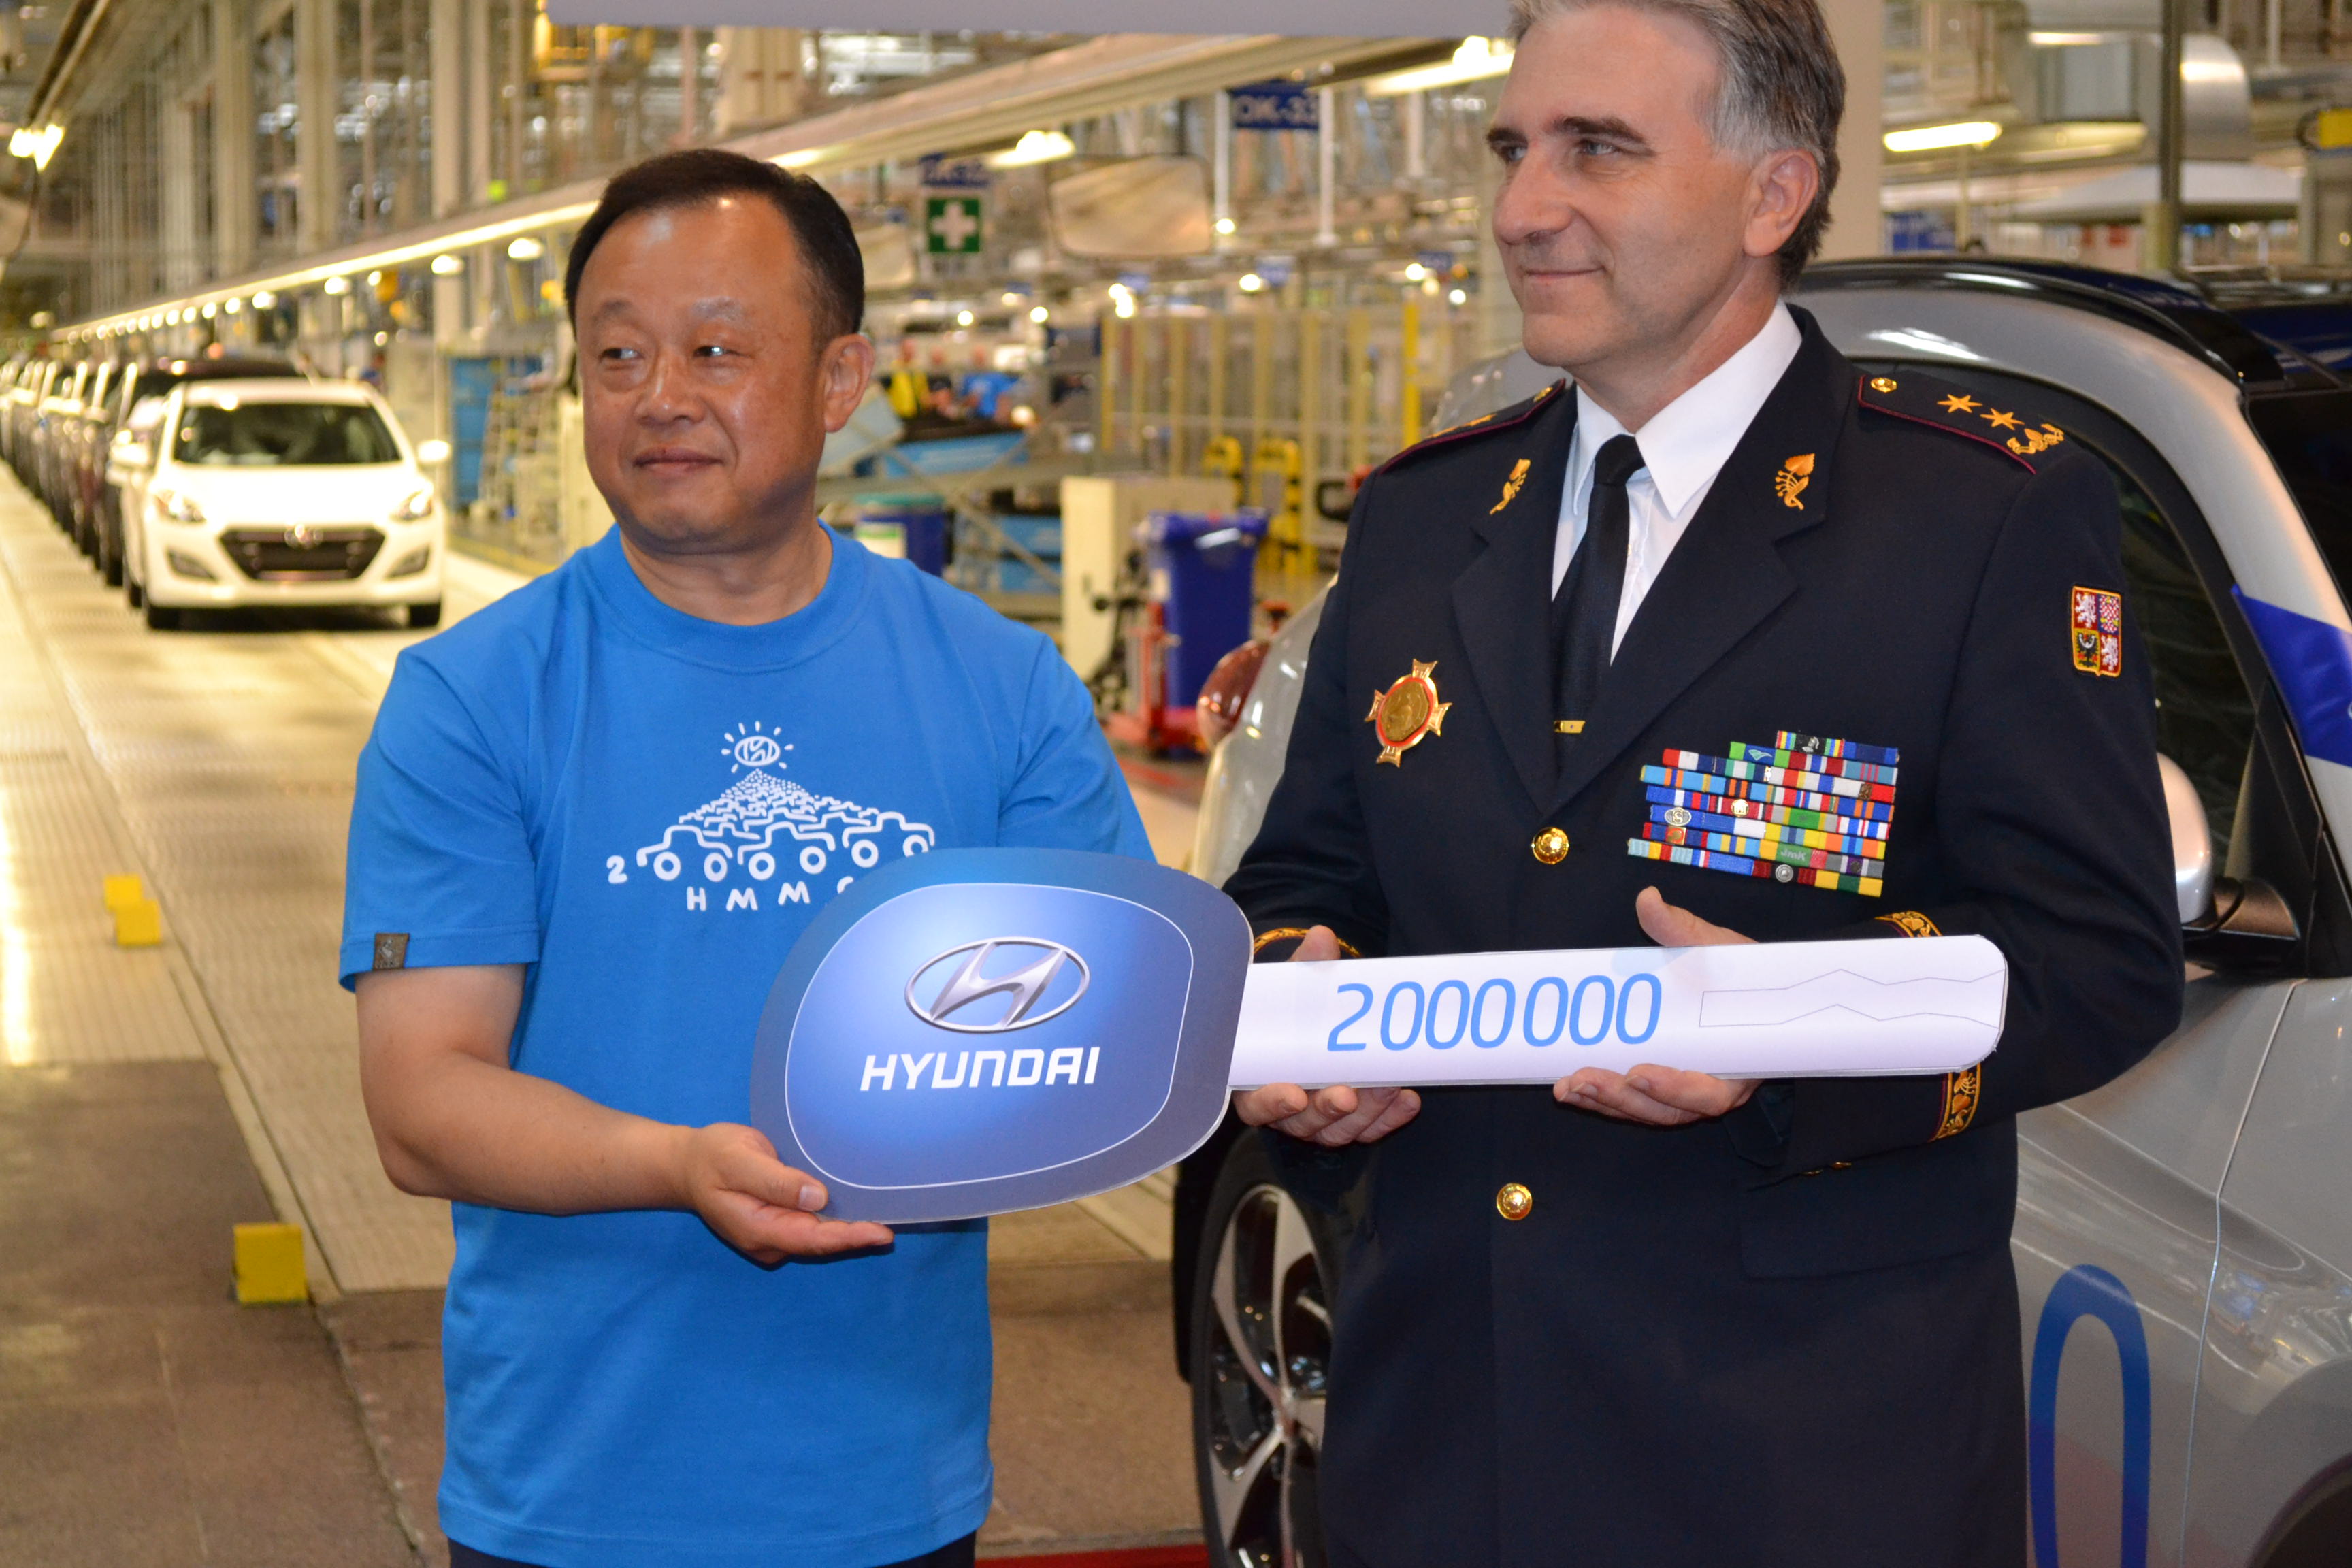 Prezident Hyundai Motor Manufacturing Czech Dongwoo Choi předává klíč od dvoumiliontého vozu. Foto: Jaroslav Baďura, Magazín PATRIOT